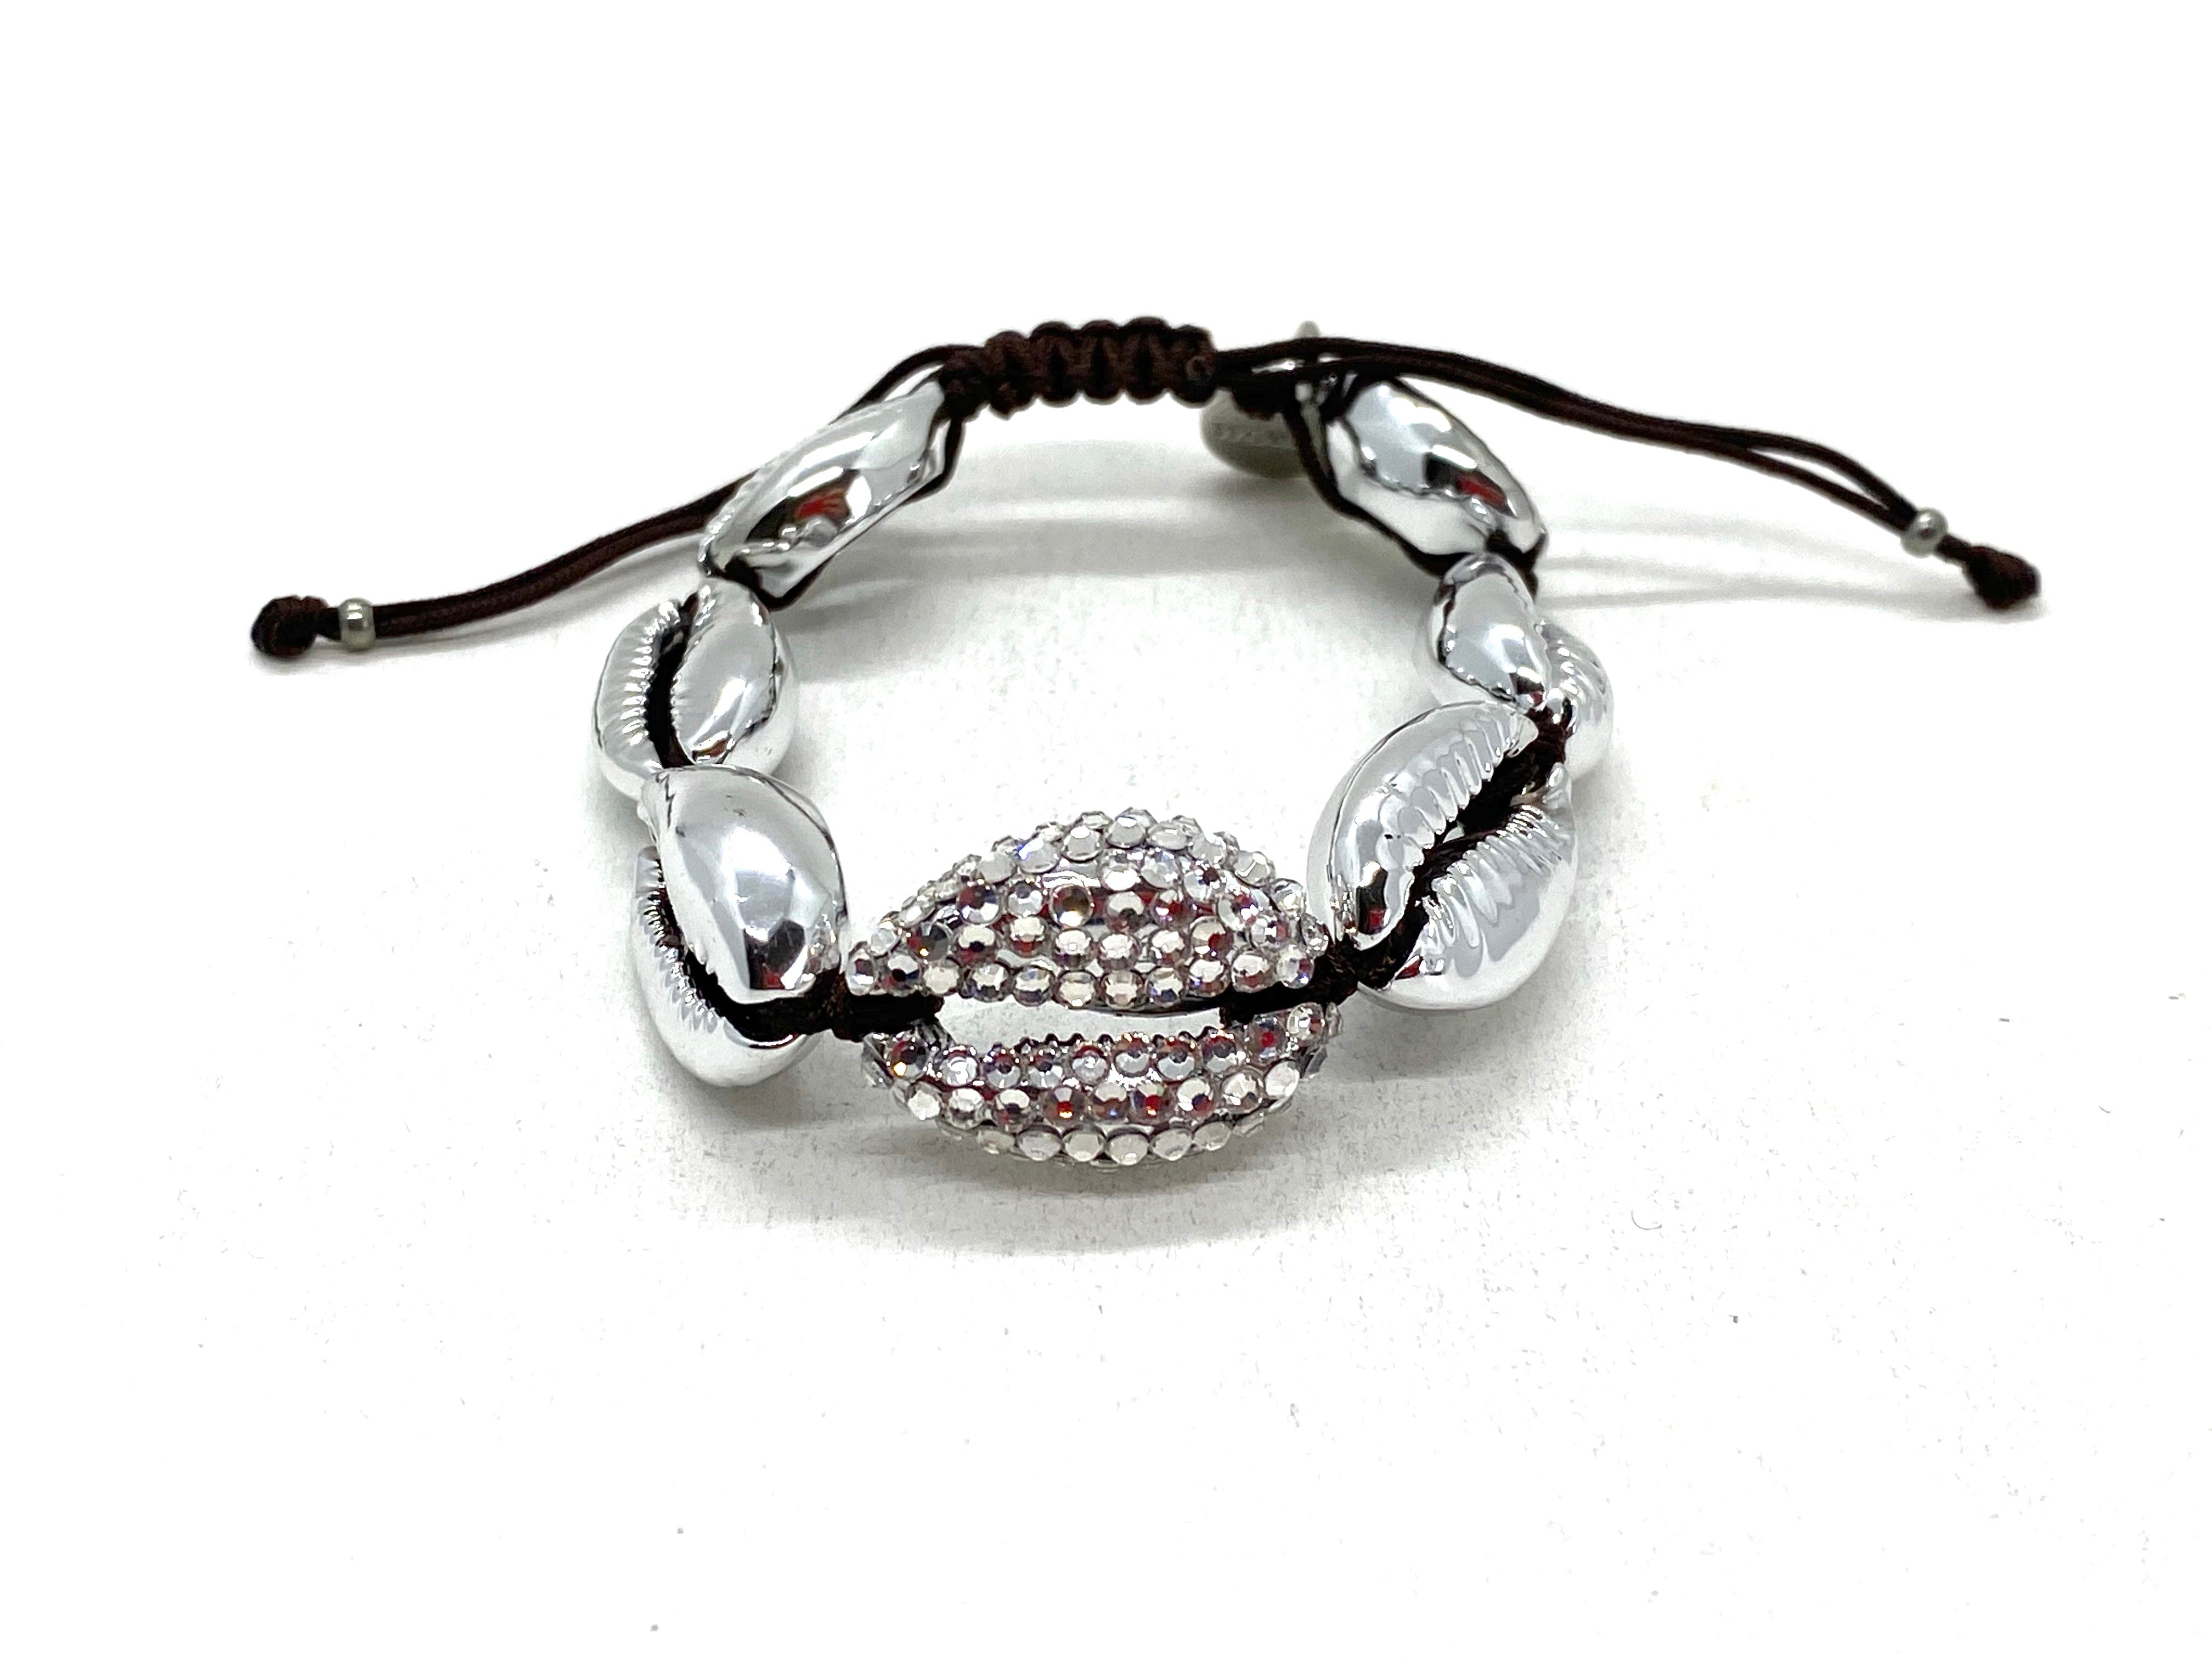 Silver shell bracelet, central piece studded.